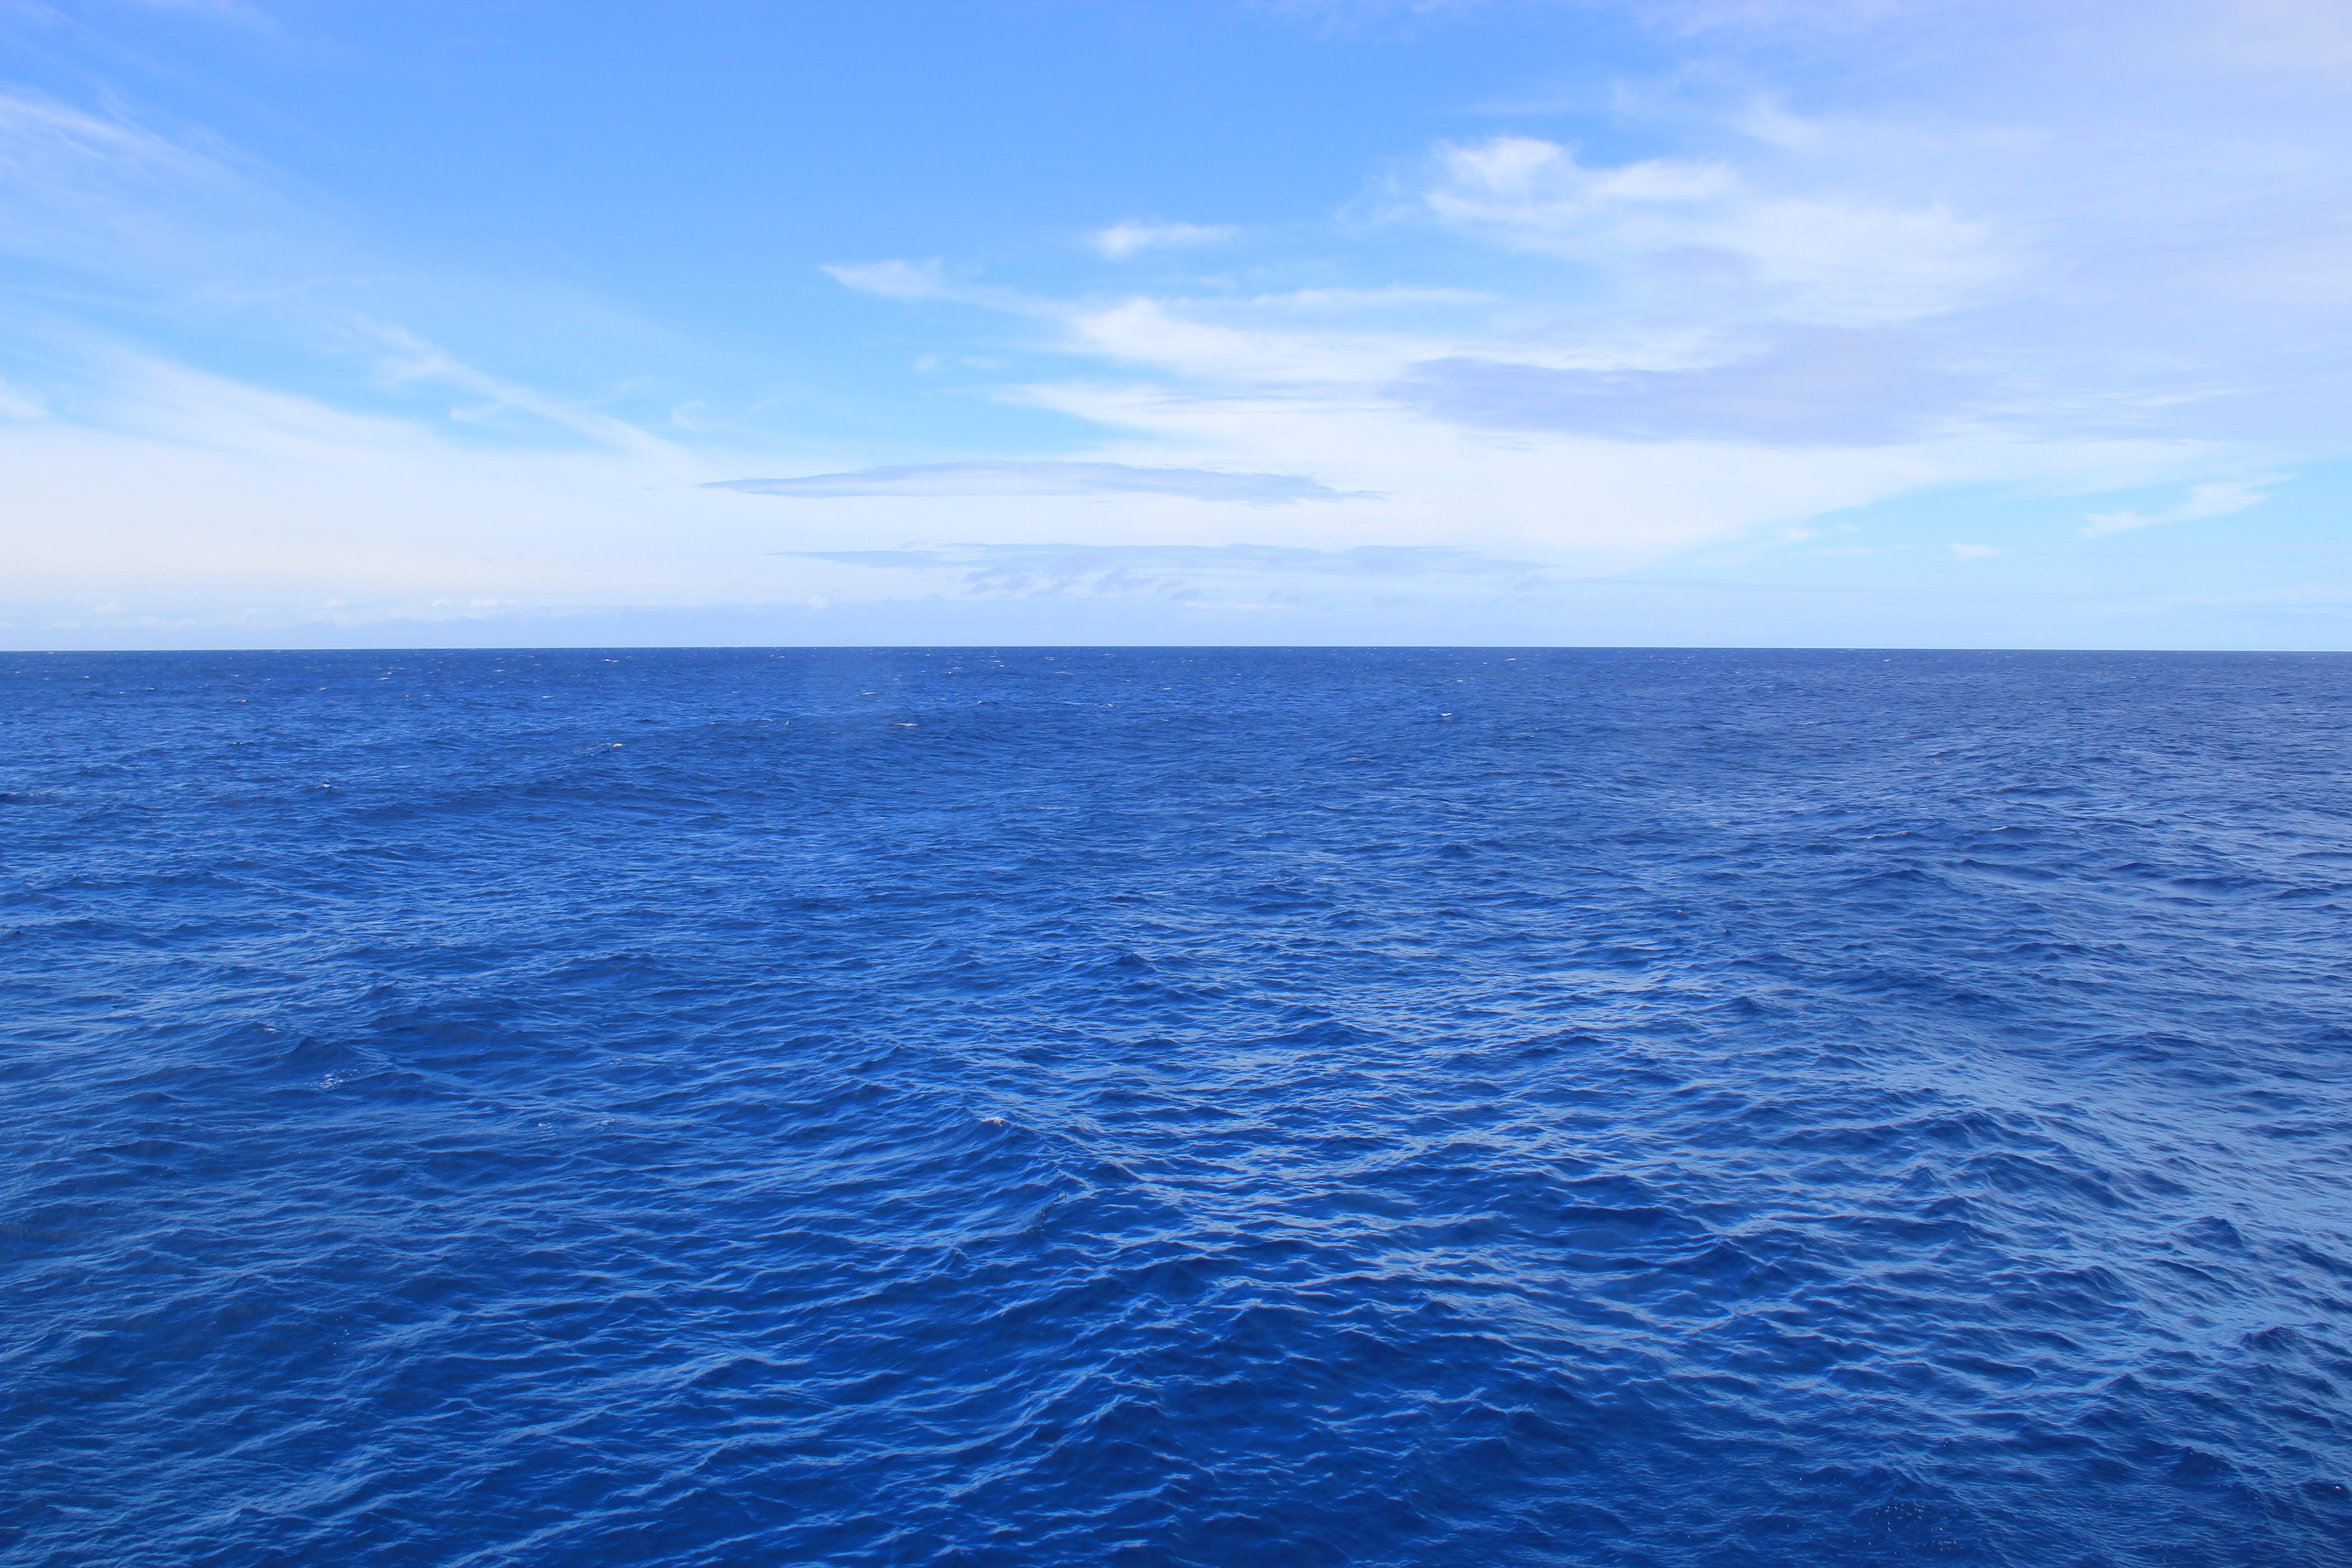 航拍看到了美丽的画面,大西洋和太平洋海水隔离,颜色一深一浅